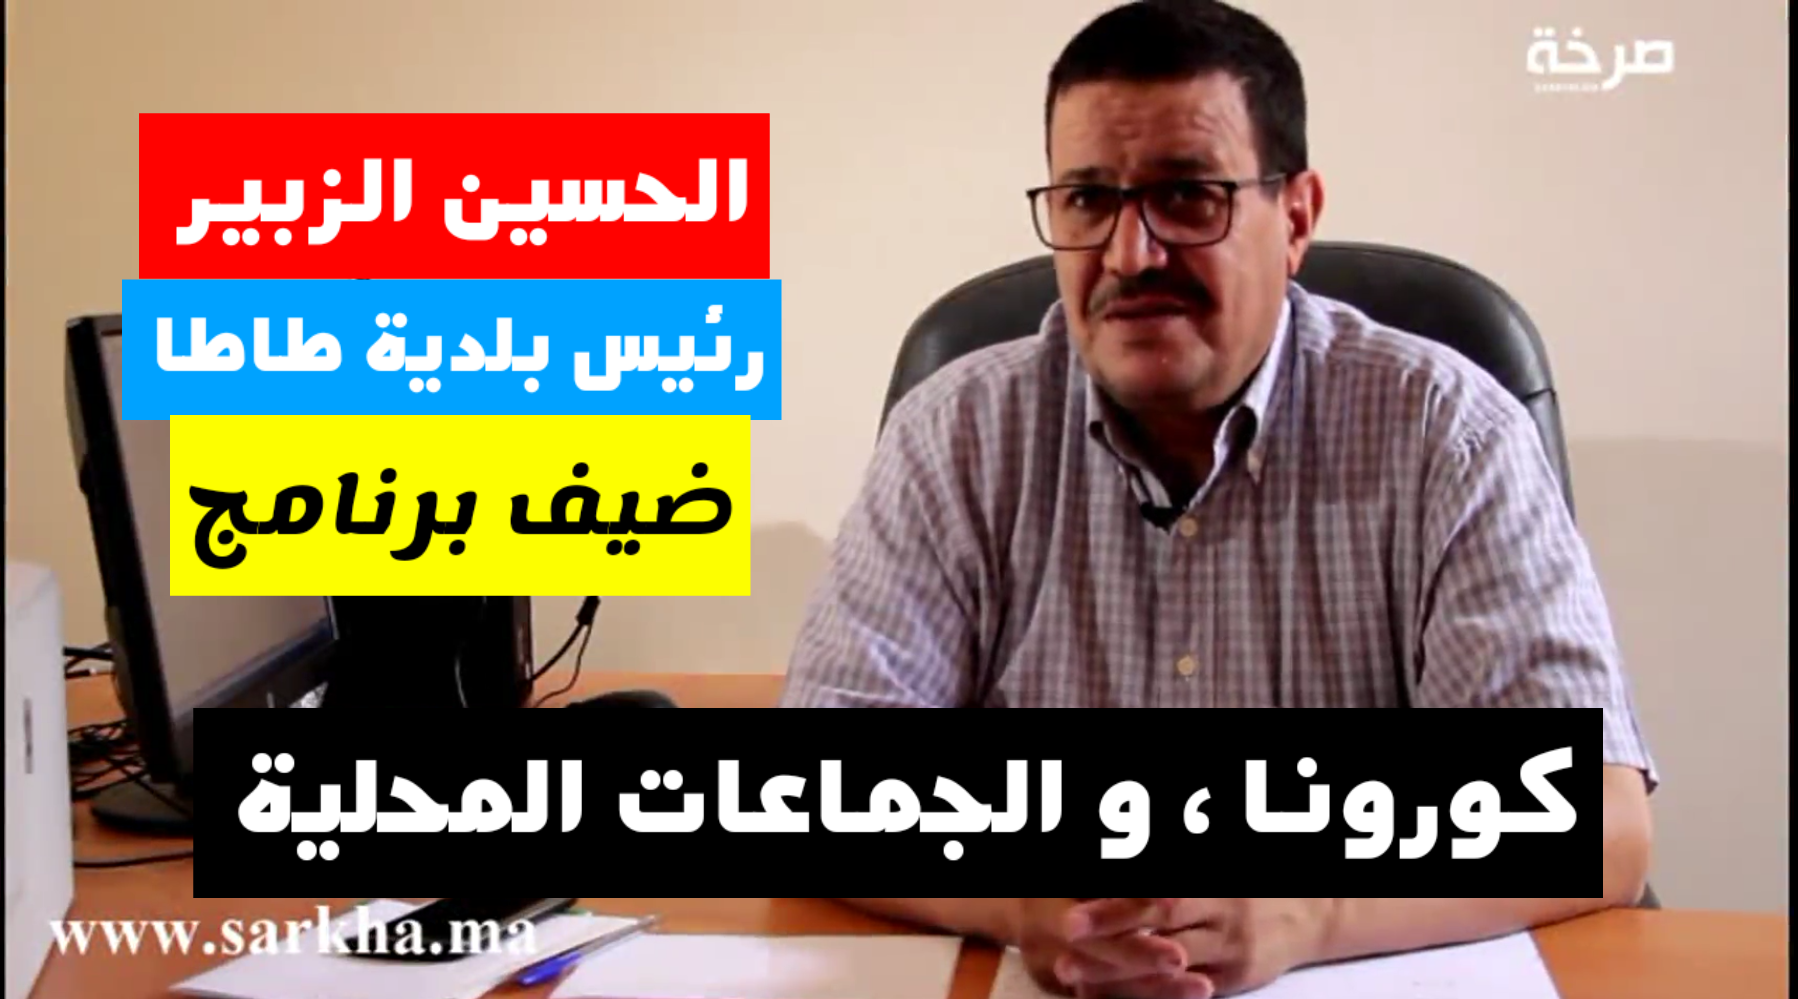 الحسن الزبير رئيس بلدية طاطا ضيف برنامج #كورونا و الجماعات المحلية